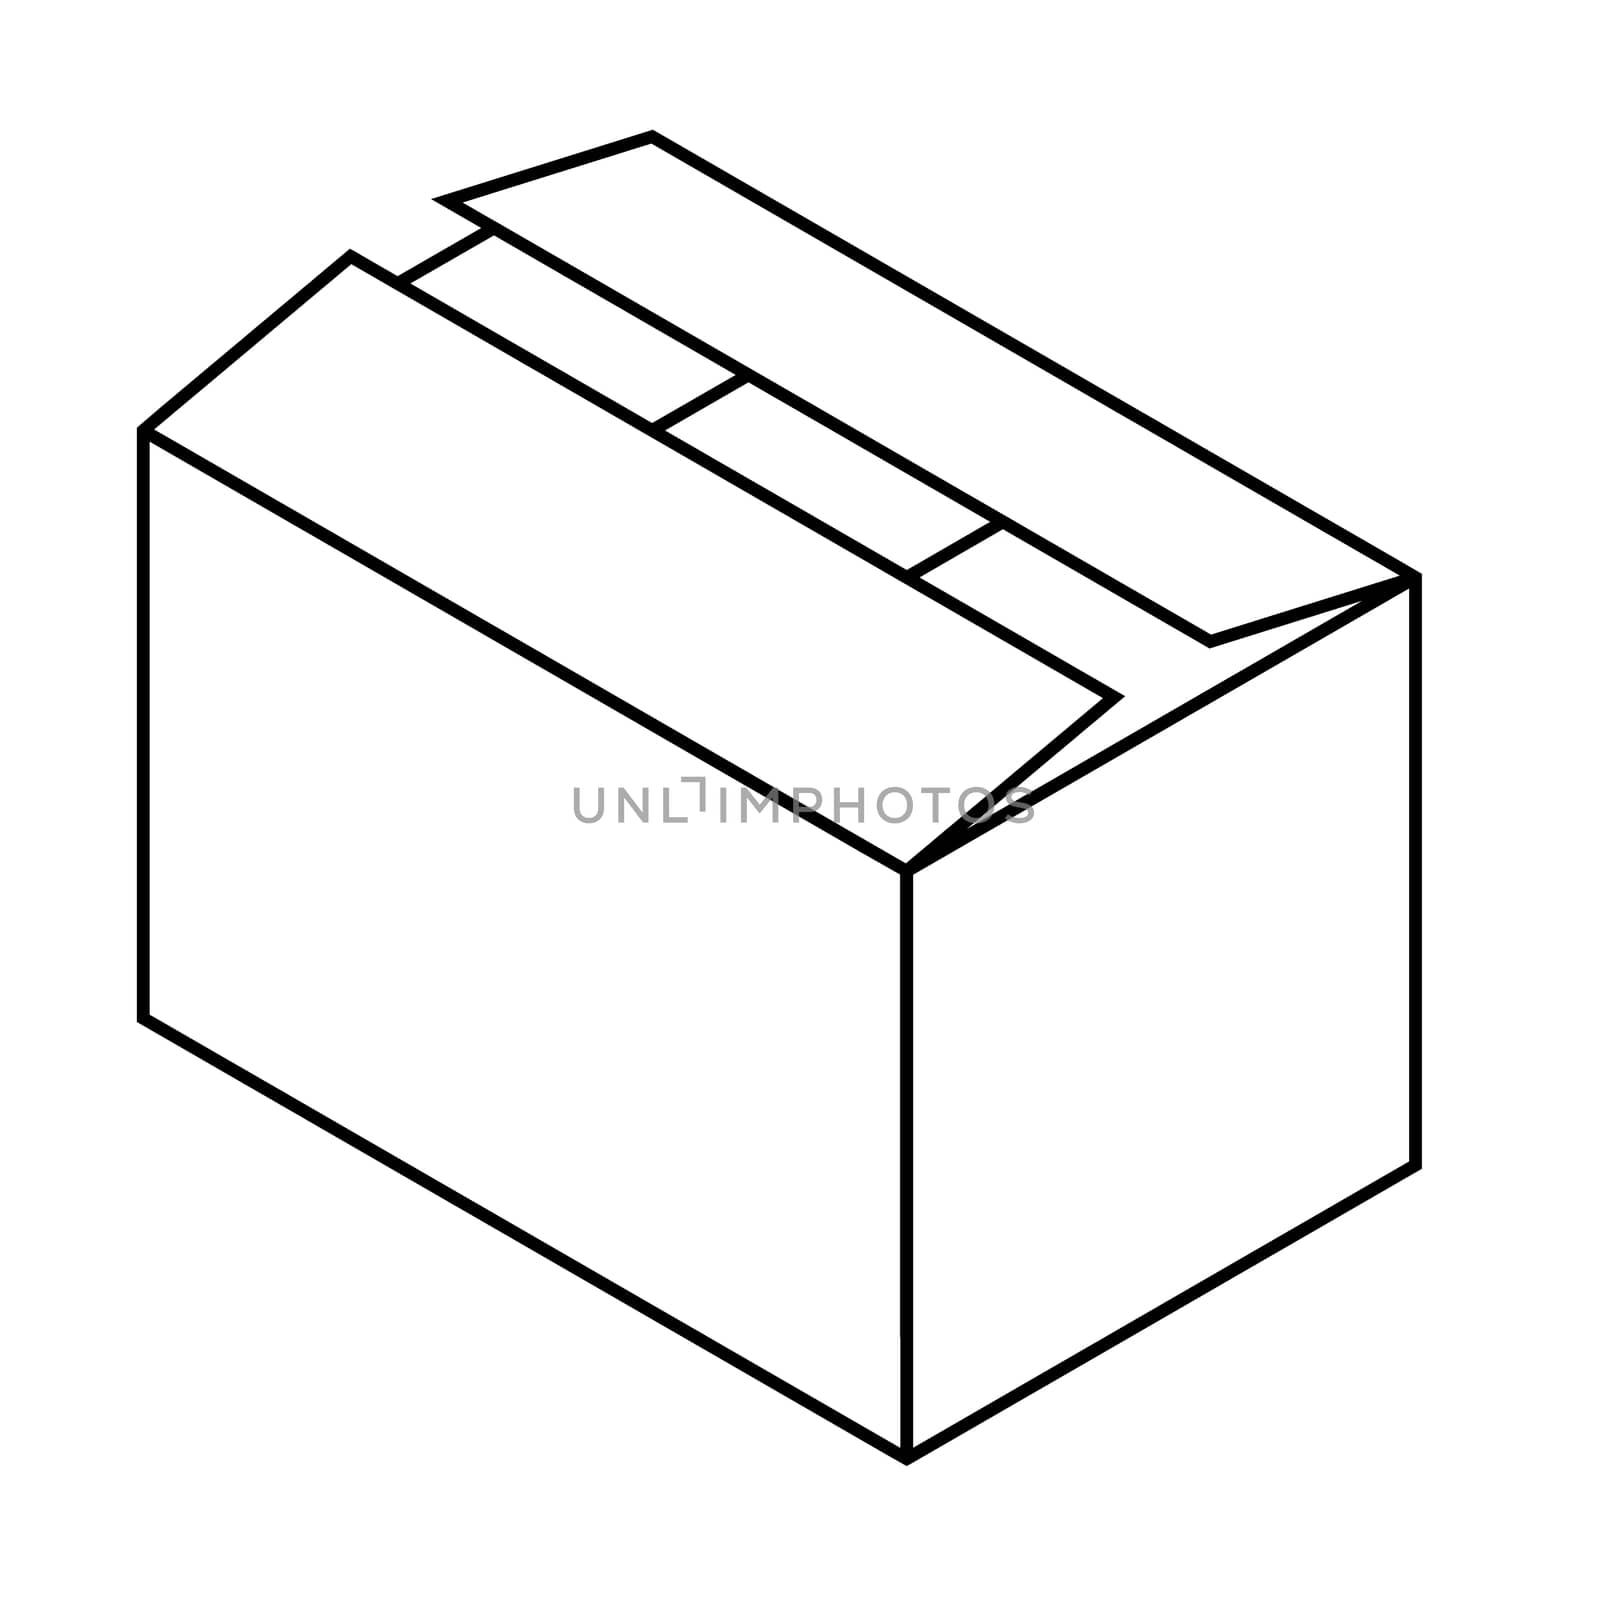 lineart box illustration in black over white